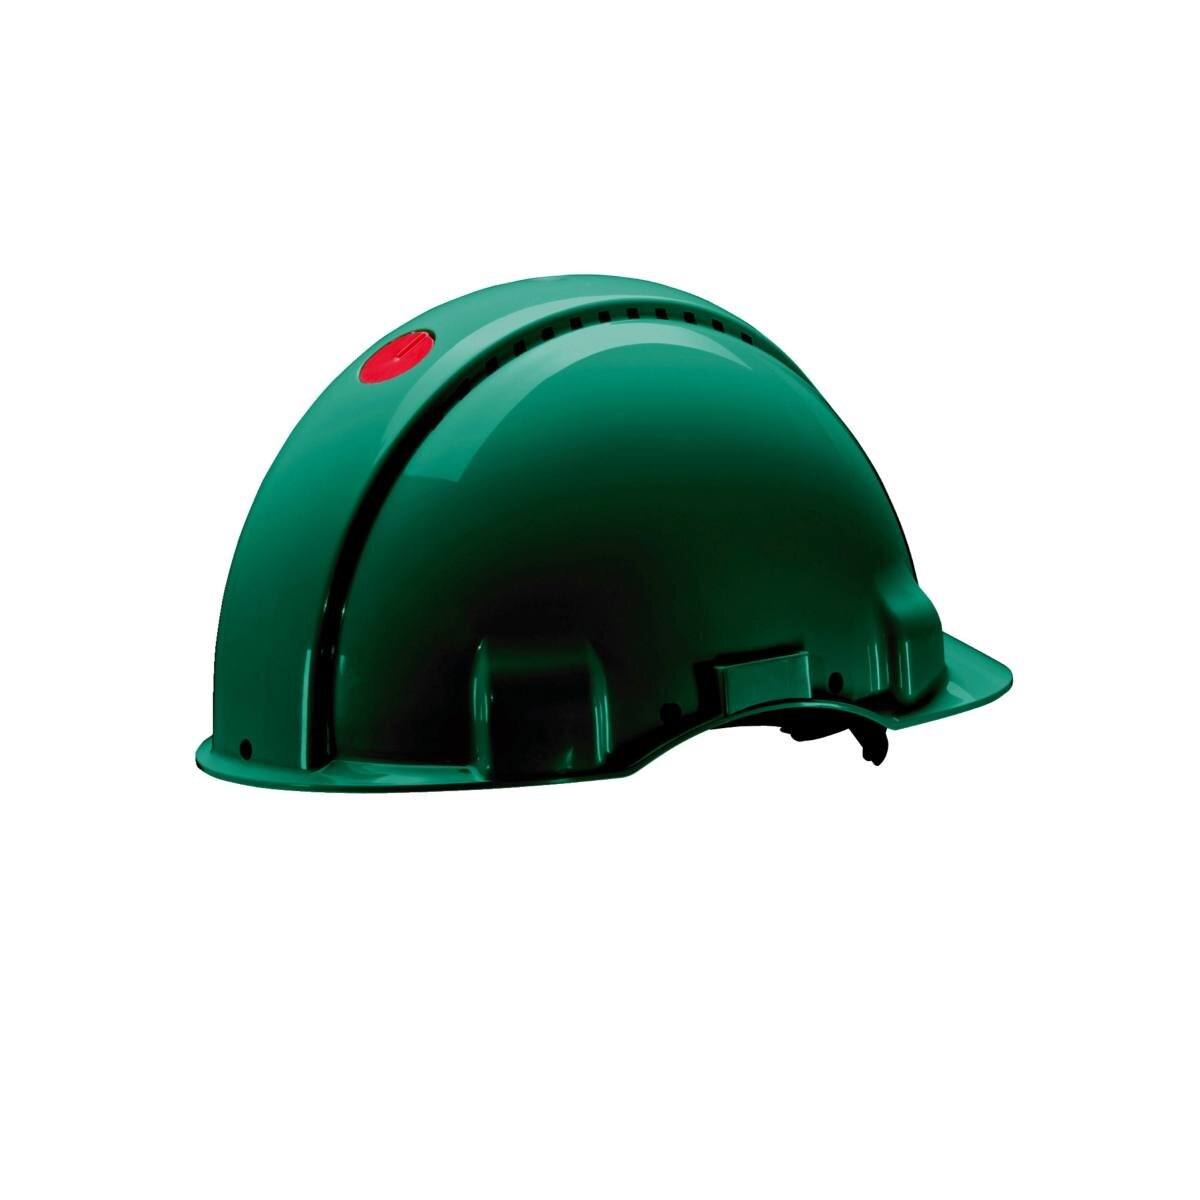 elmetto di sicurezza 3M G3000 G30DUG di colore verde, ventilato, con uvicatore, pinlock e fascia antisudore in pelle